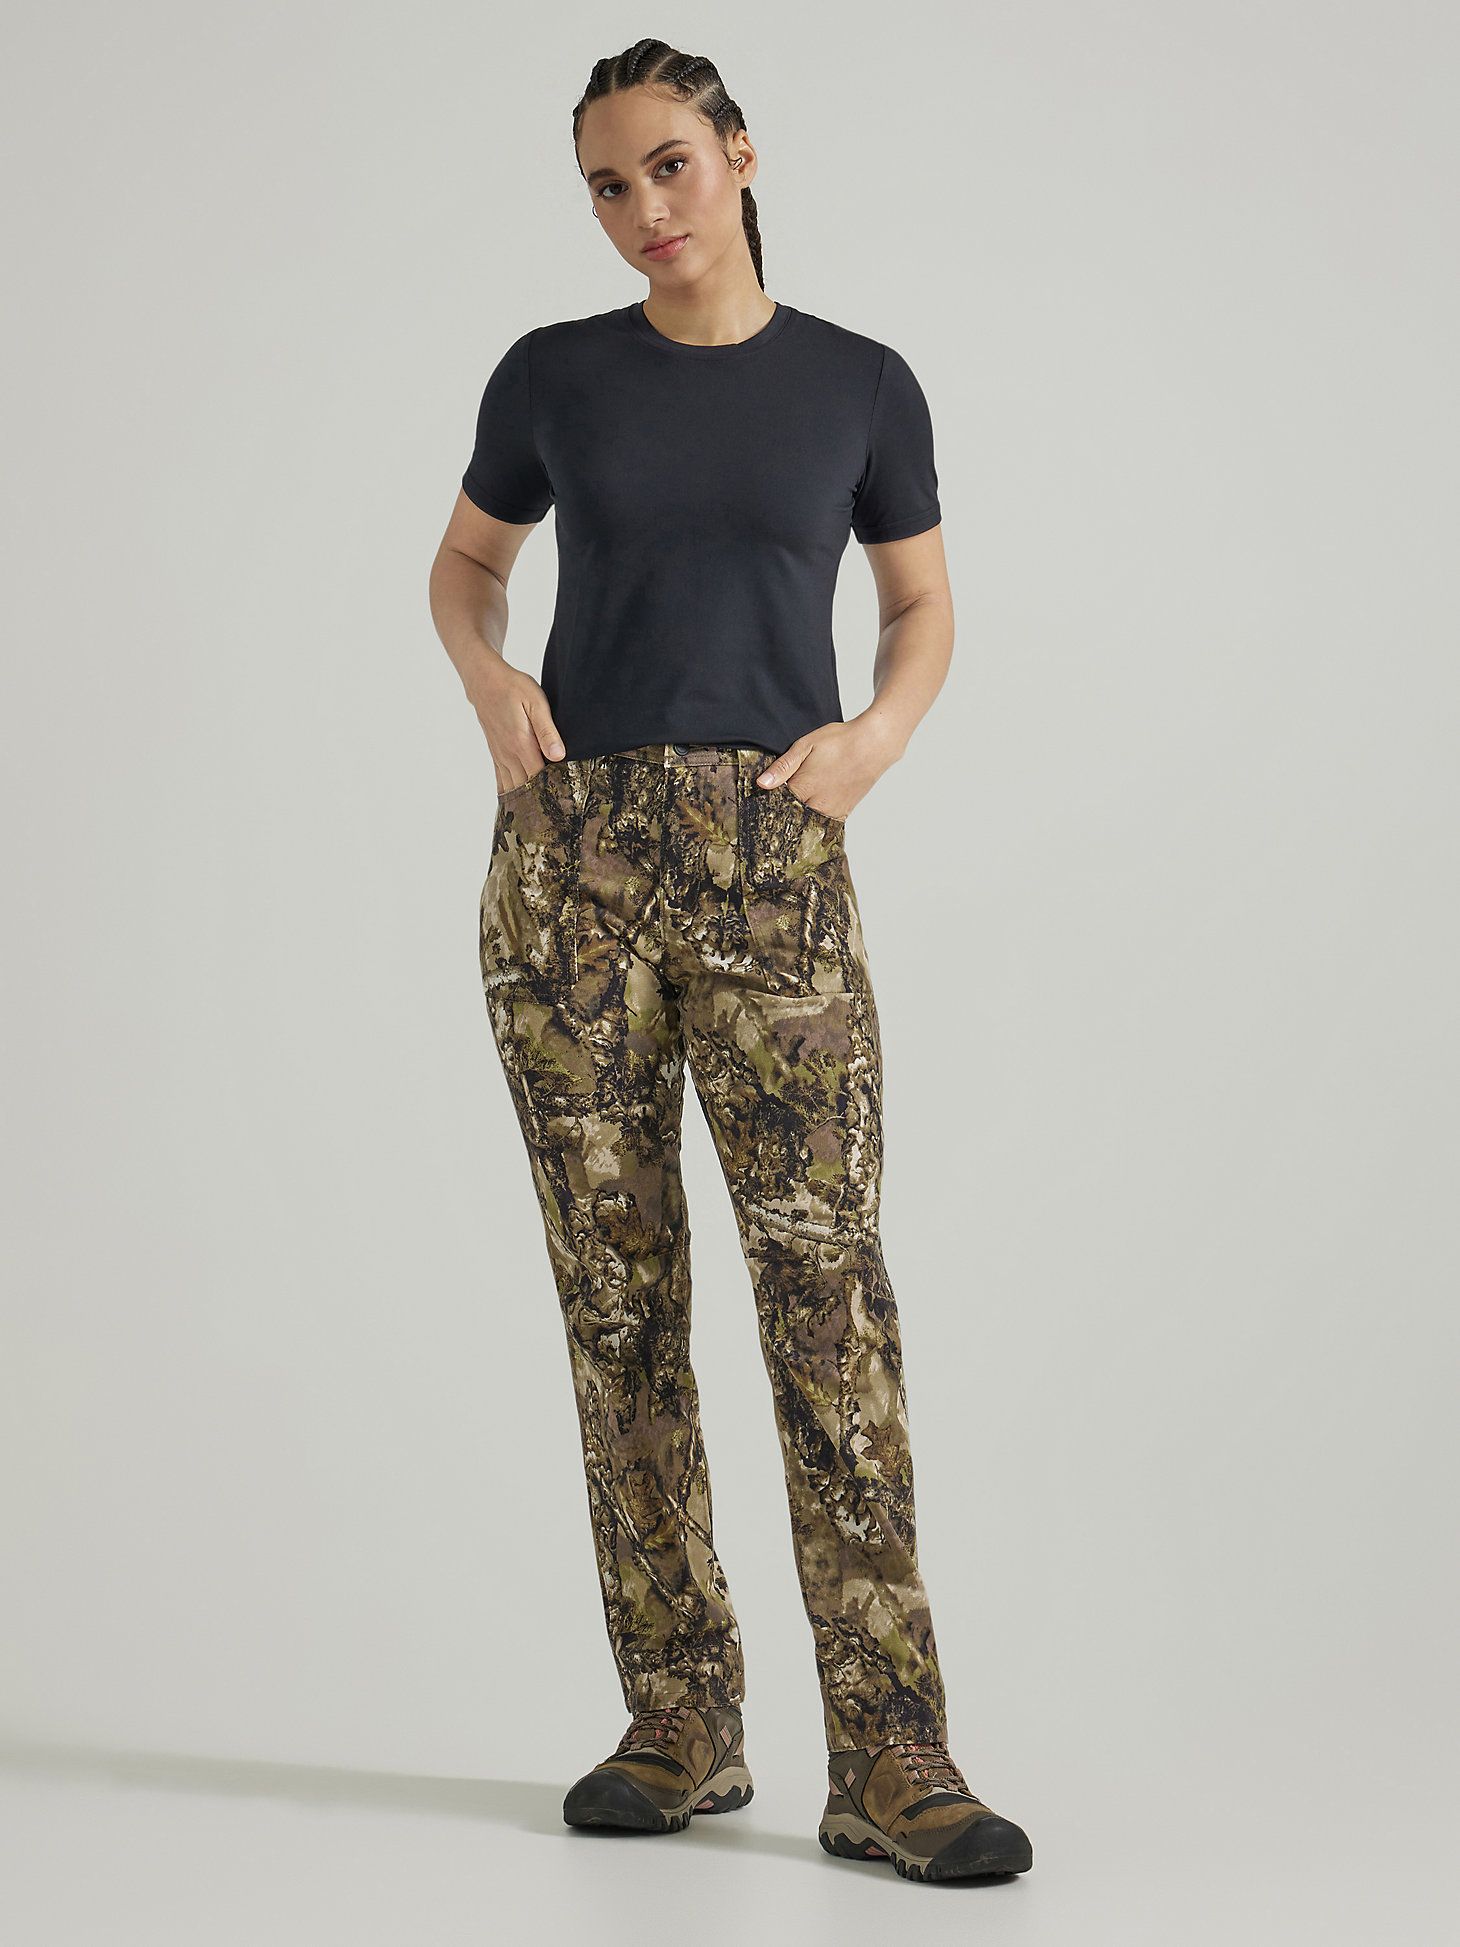 ATG Wrangler Hunter™ Women's Sierra Slim Pant in Warmwoods Camo | Wrangler